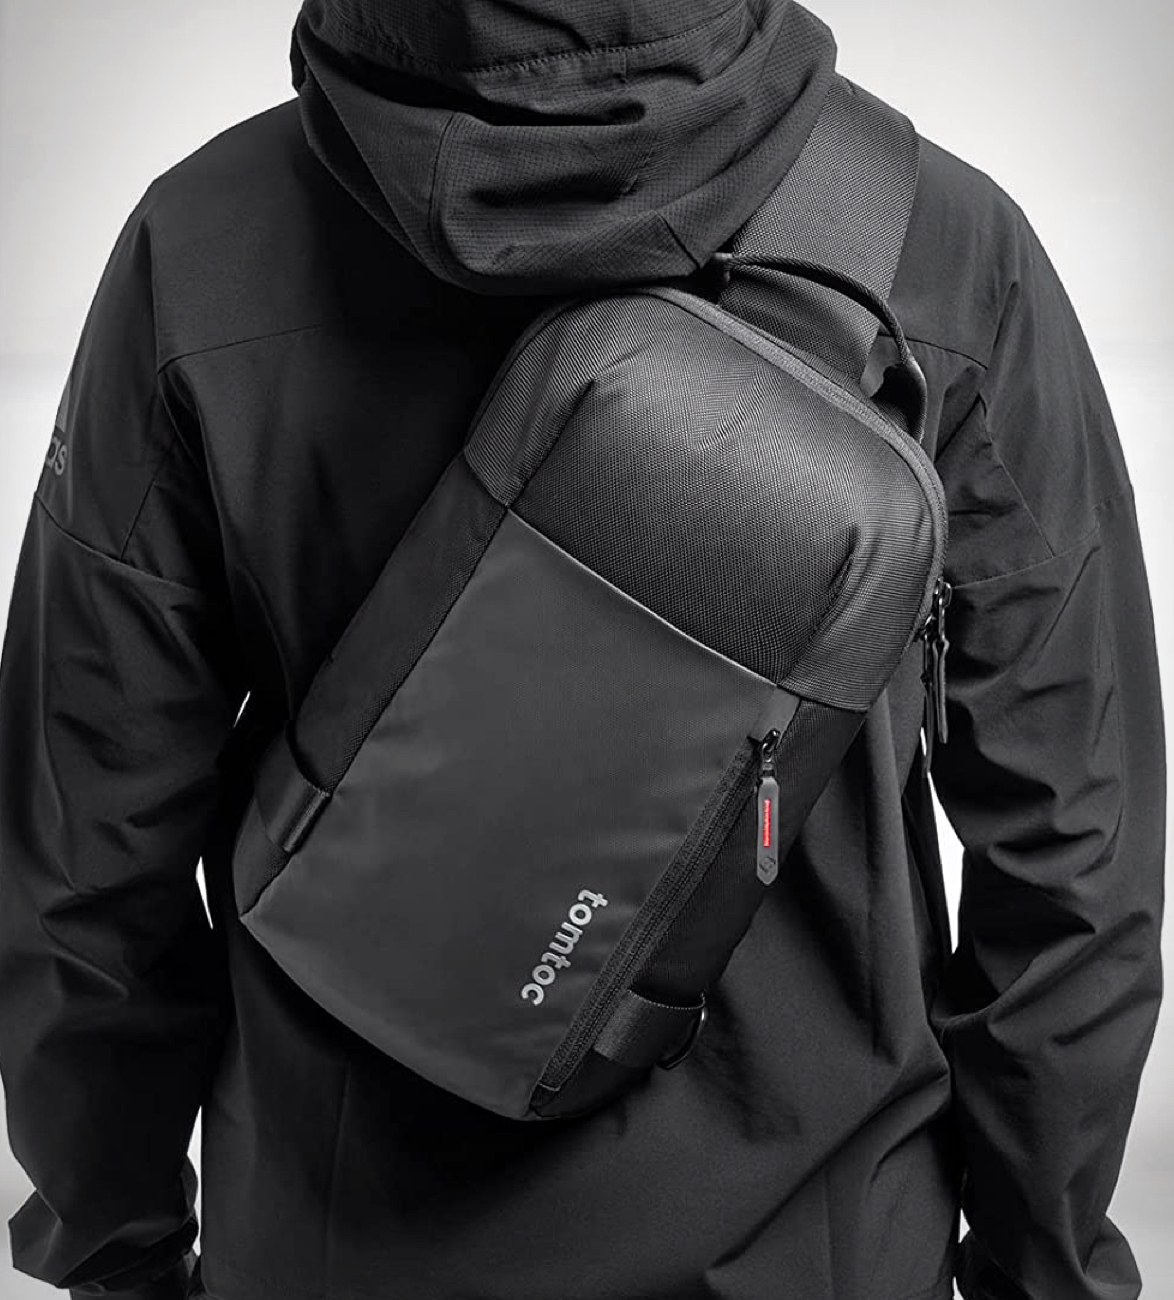 tomtoc-edc-sling-bag-3.jpg | Image